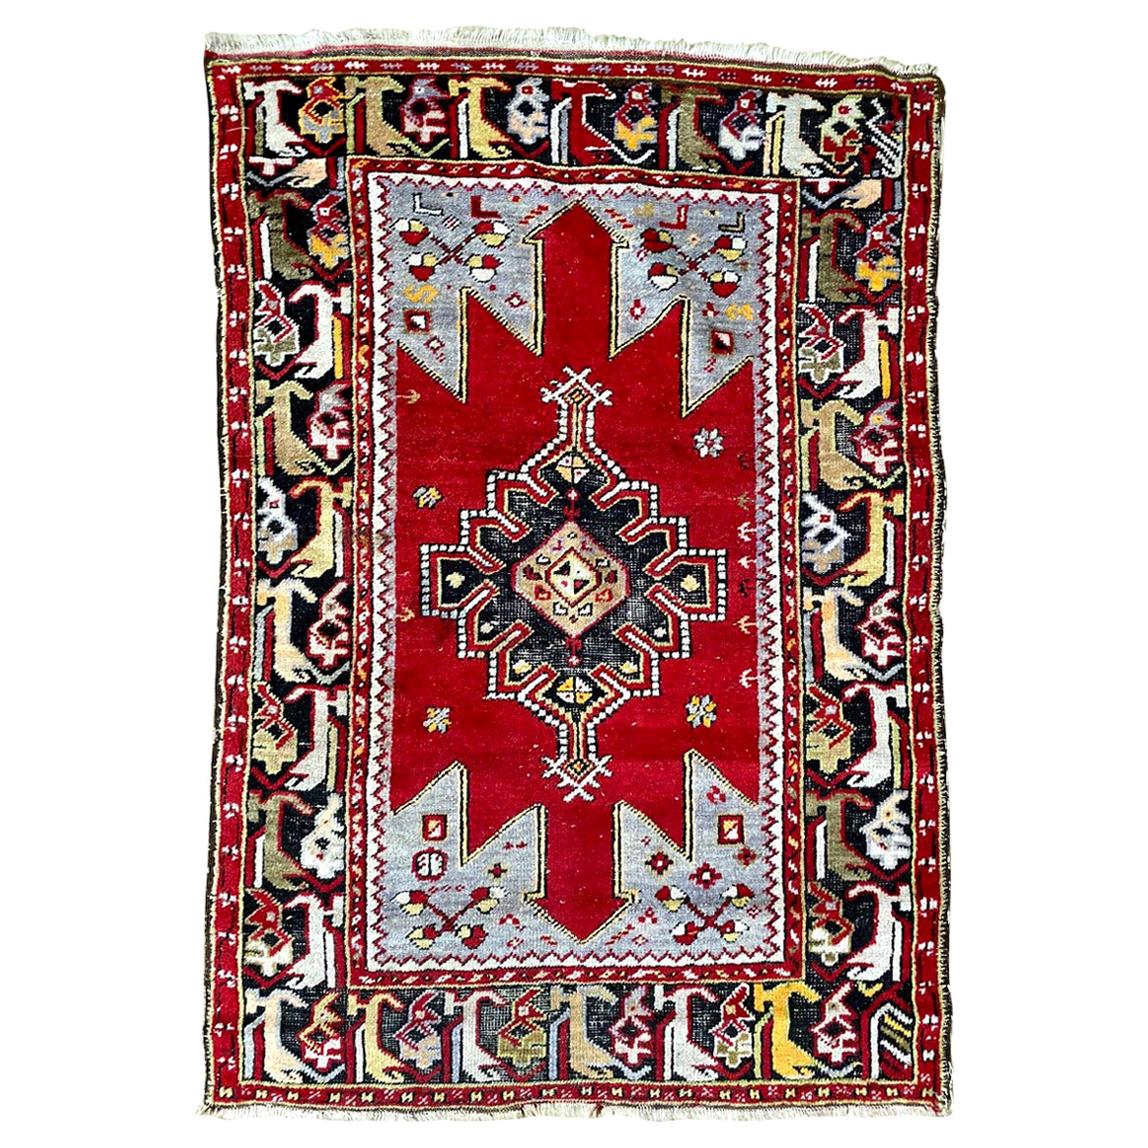 Joli tapis turc d'Anatolie du milieu du siècle dernier